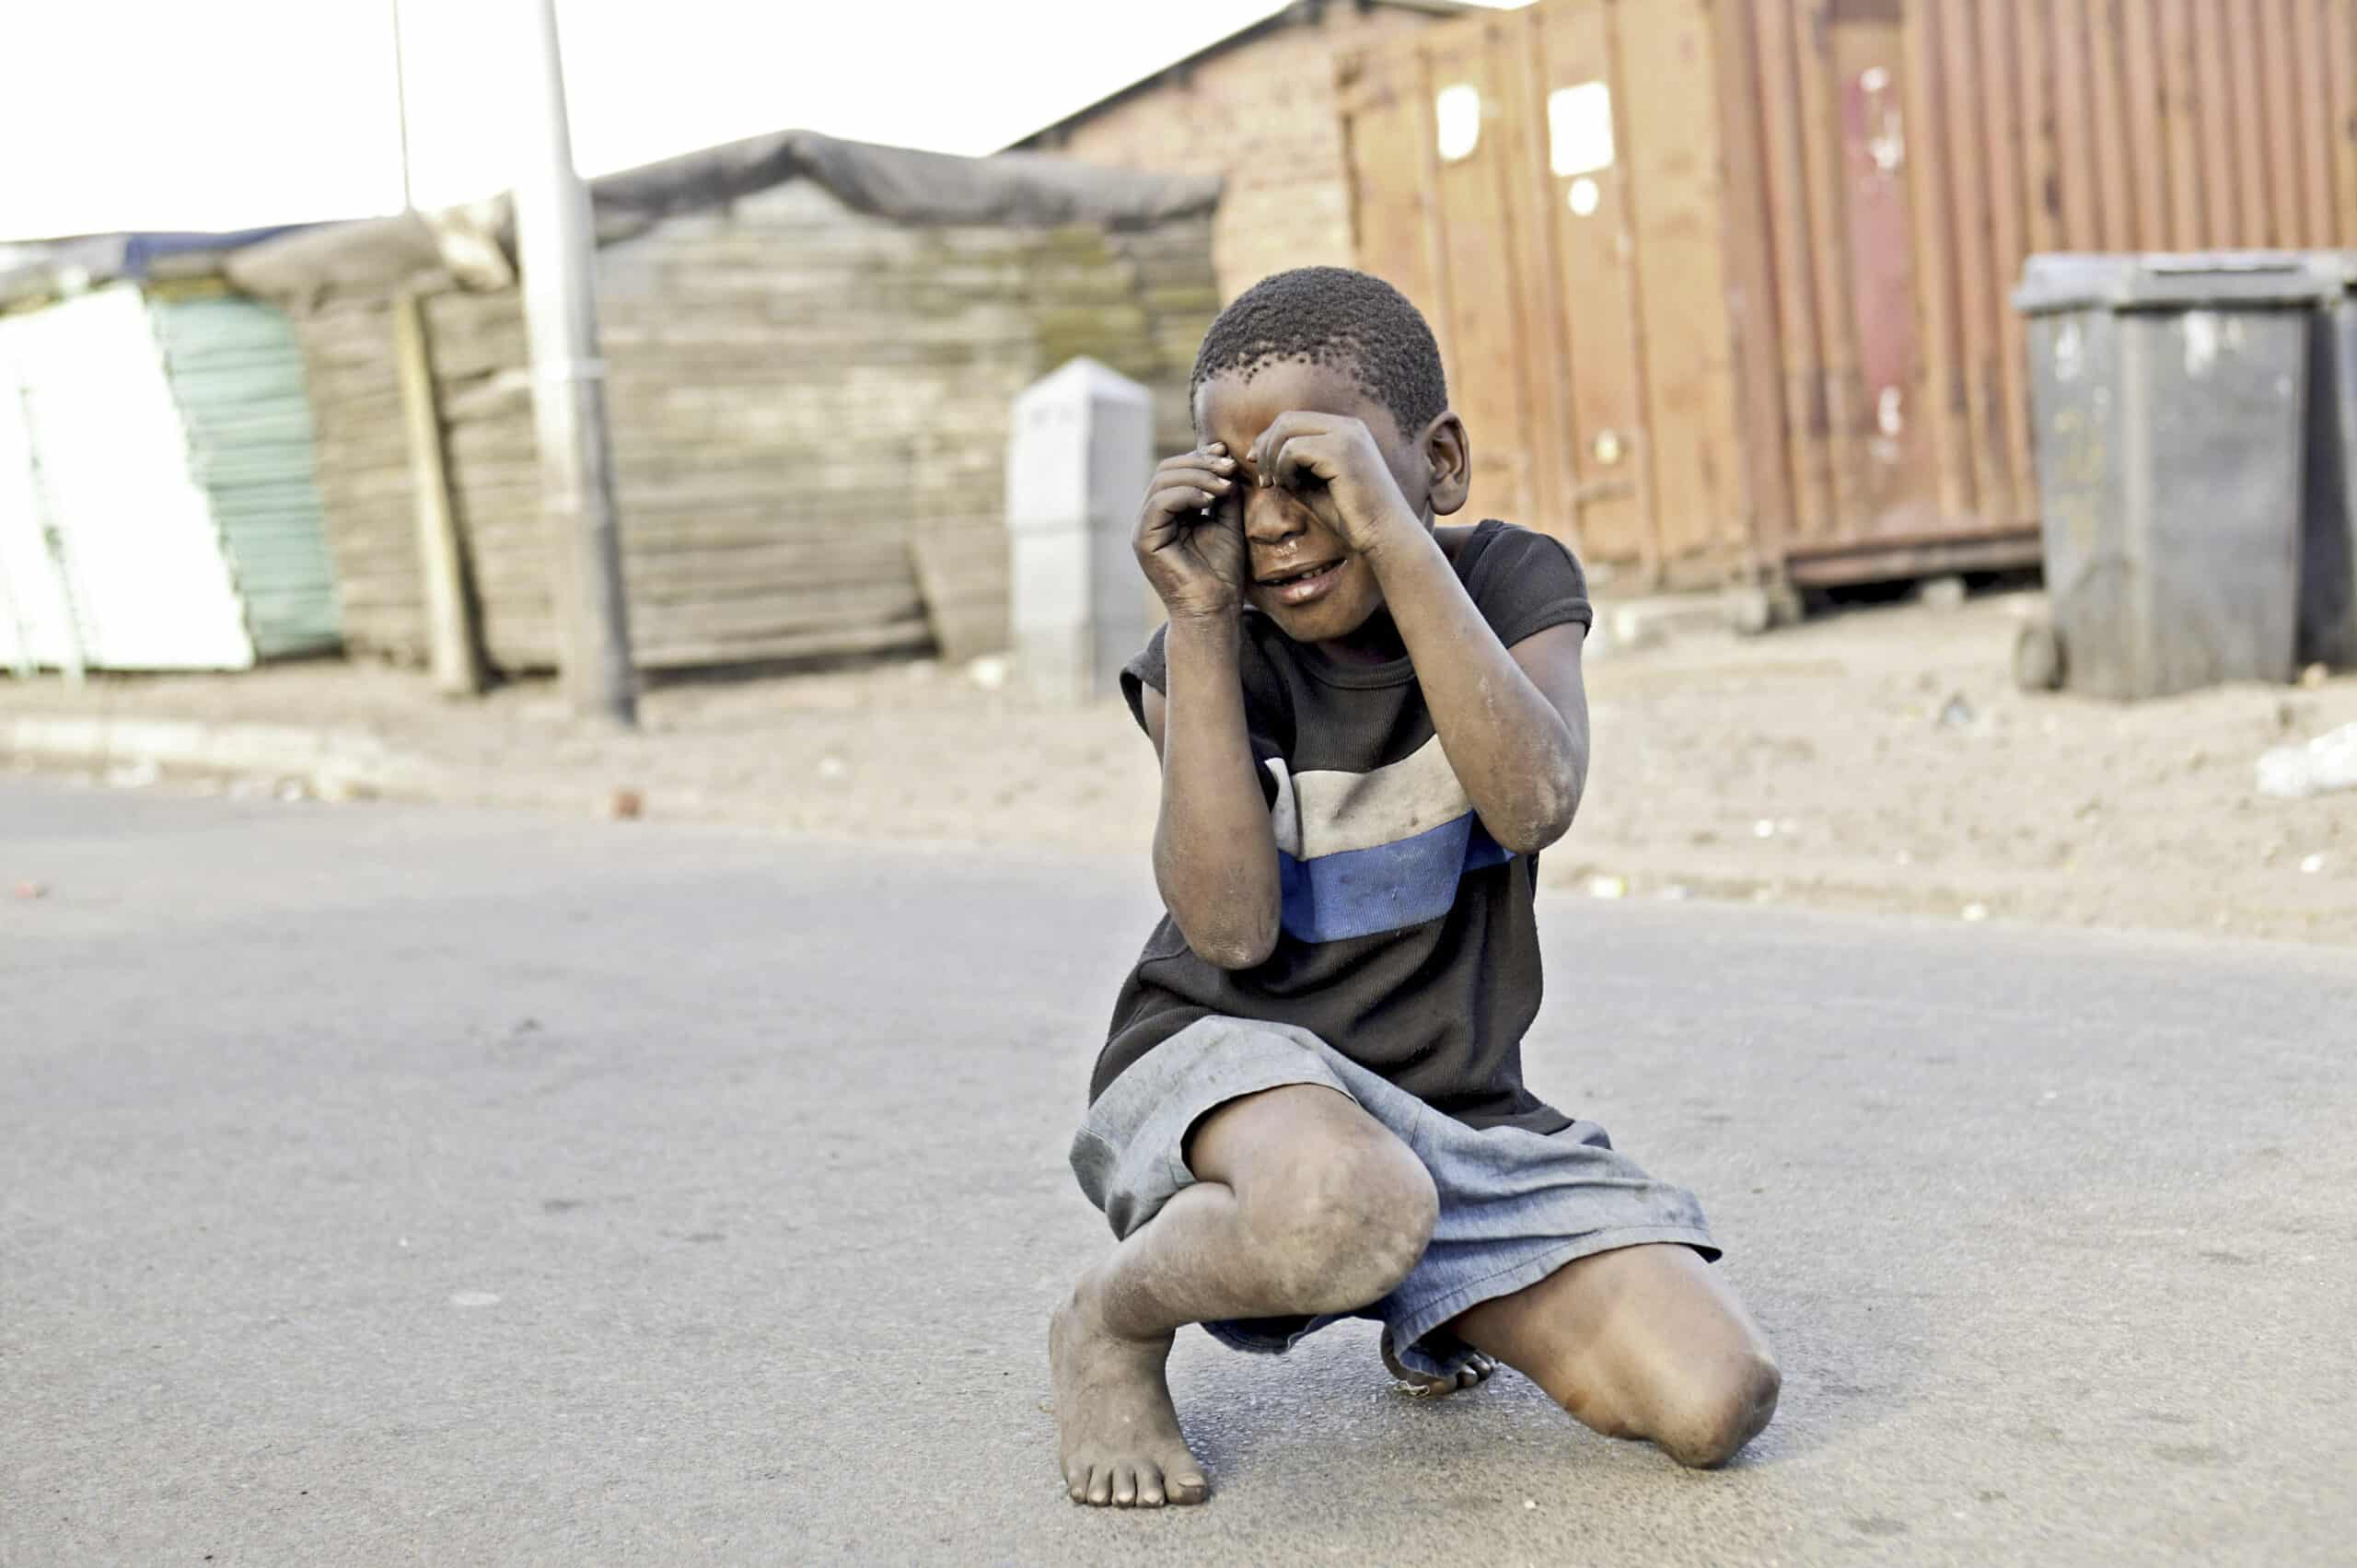 Ein kleiner Junge hockt auf einer staubigen Straße, formt mit seinen Händen vor den Augen Fingergläser und lächelt spielerisch. Im Hintergrund sind provisorische Behausungen und Schiffscontainer zu sehen. © Fotografie Tomas Rodriguez